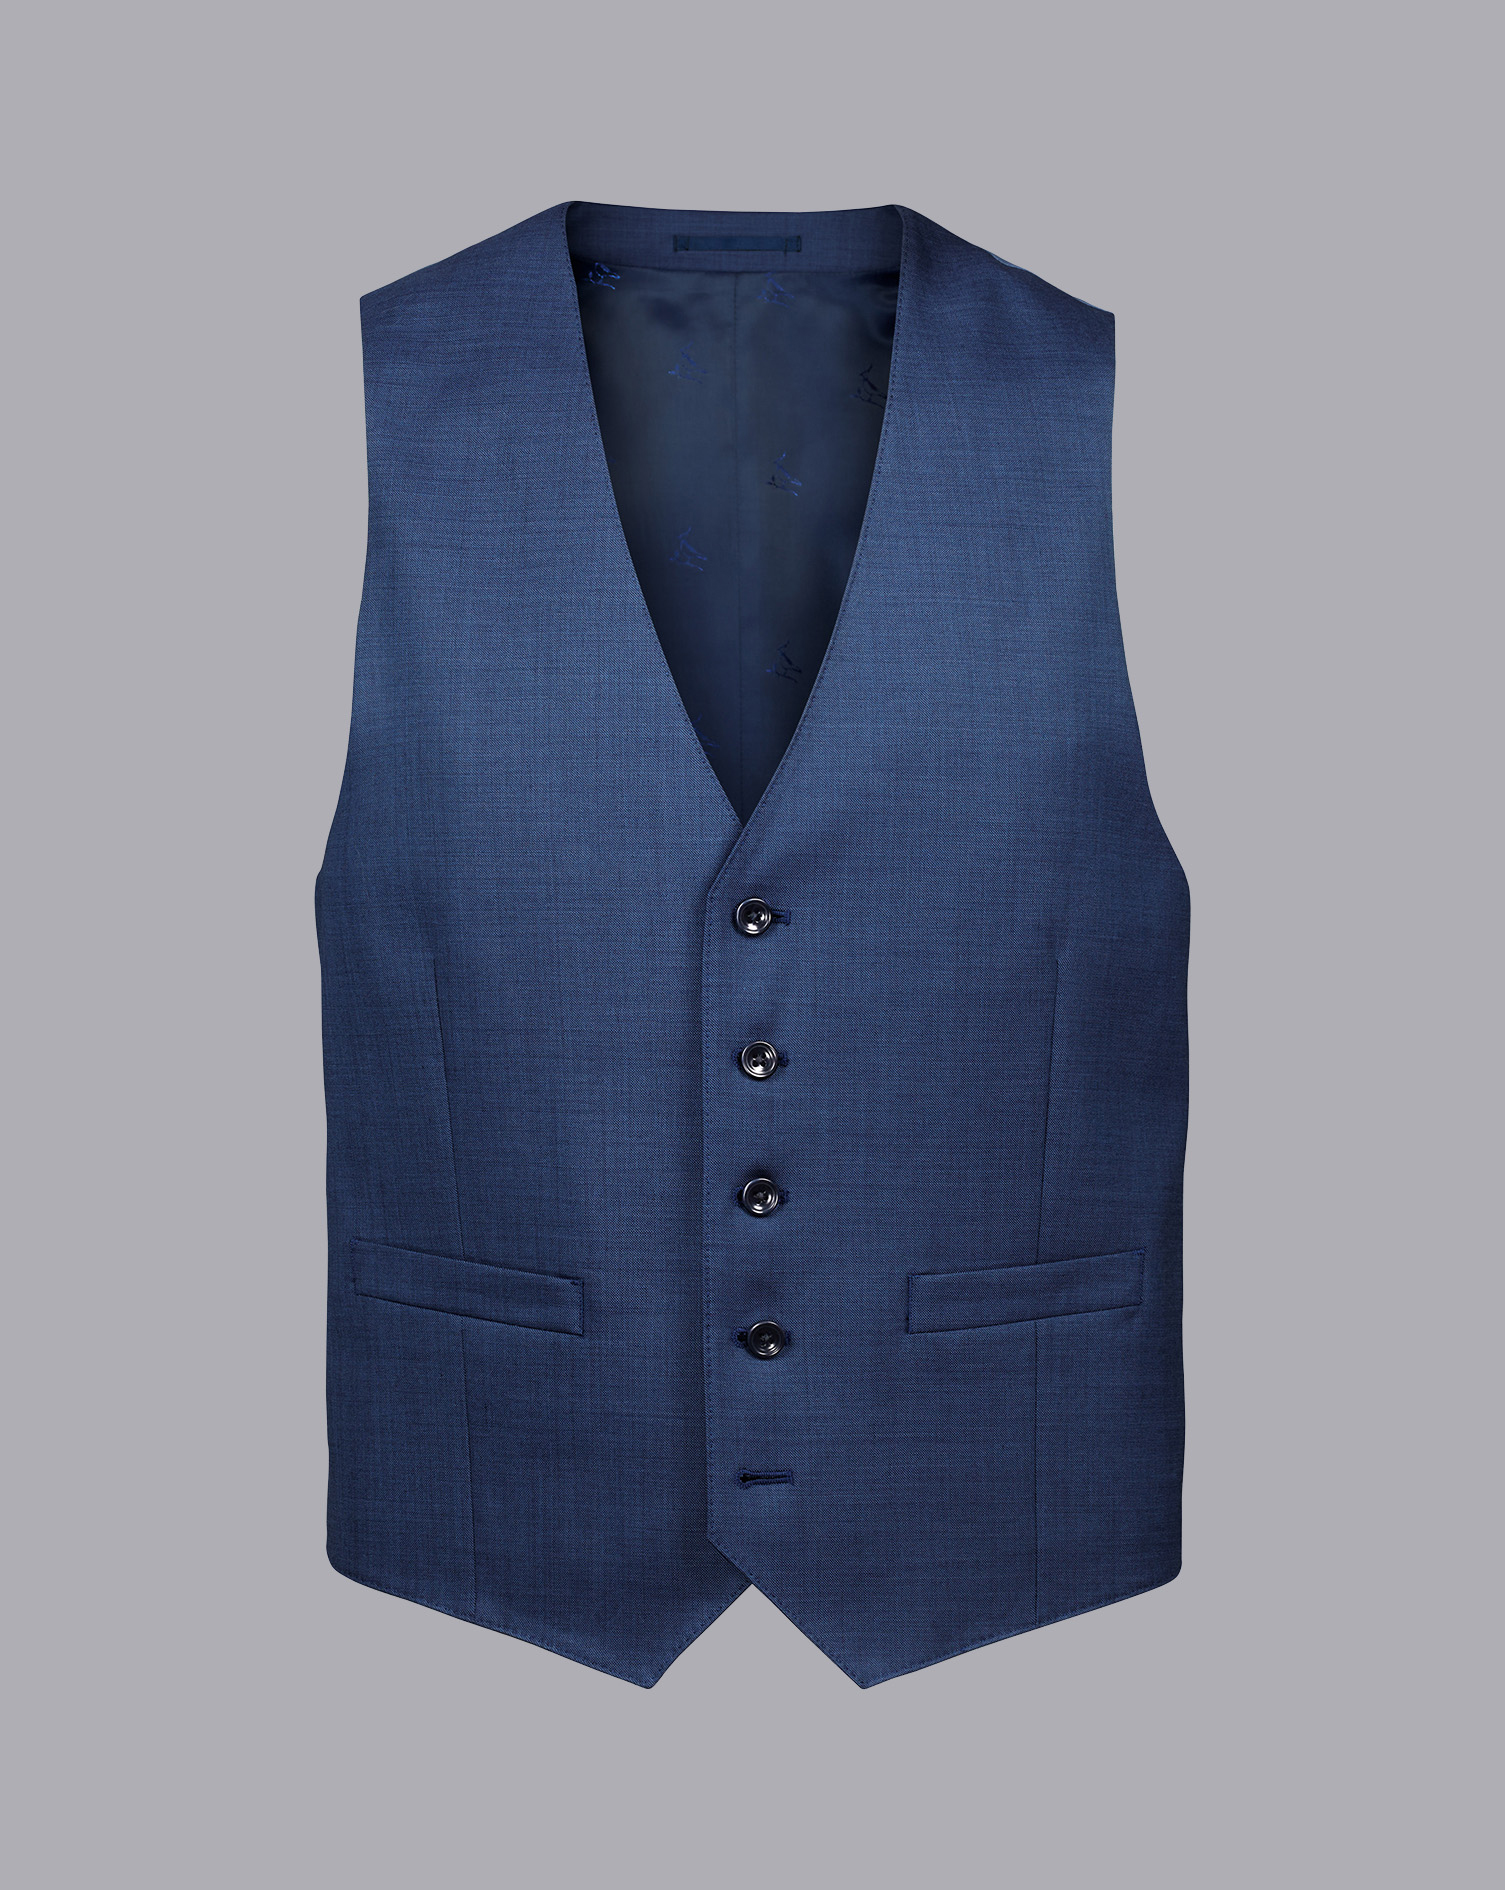 Men's Charles Tyrwhitt Sharkskin Waistcoat - Ocean Blue Size w46 Wool
